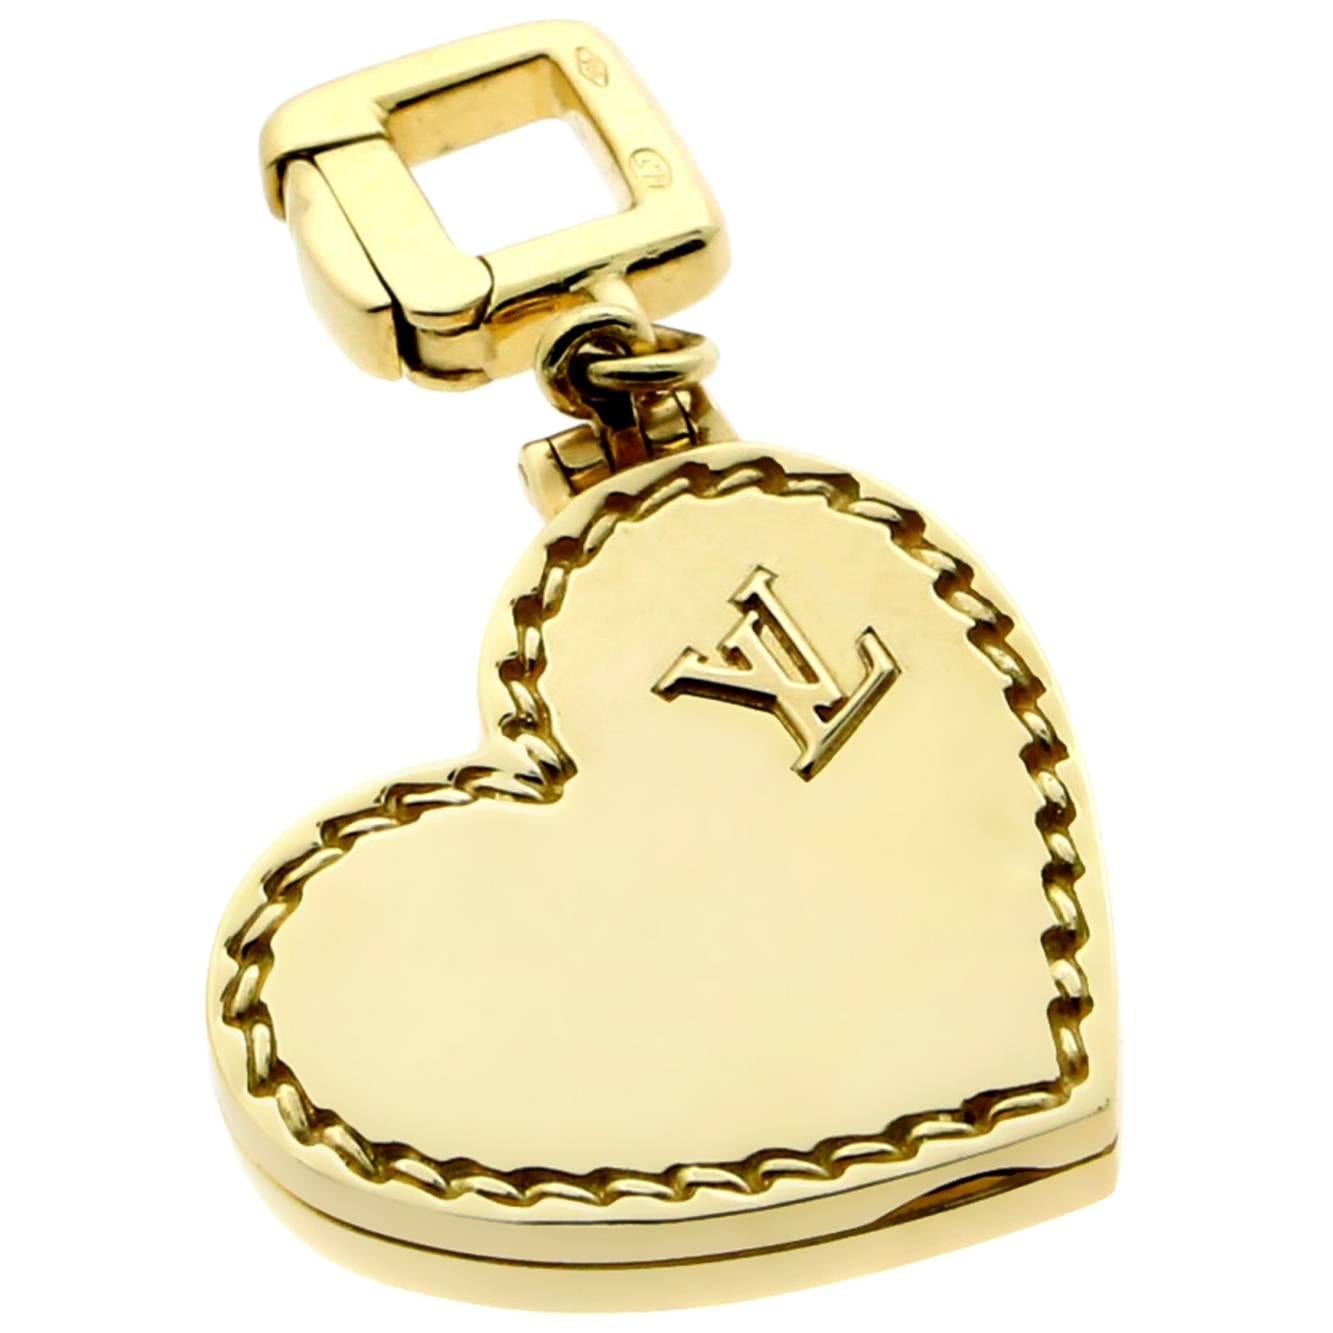 Gold Herz-Medaillon-Charm von Louis Vuitton